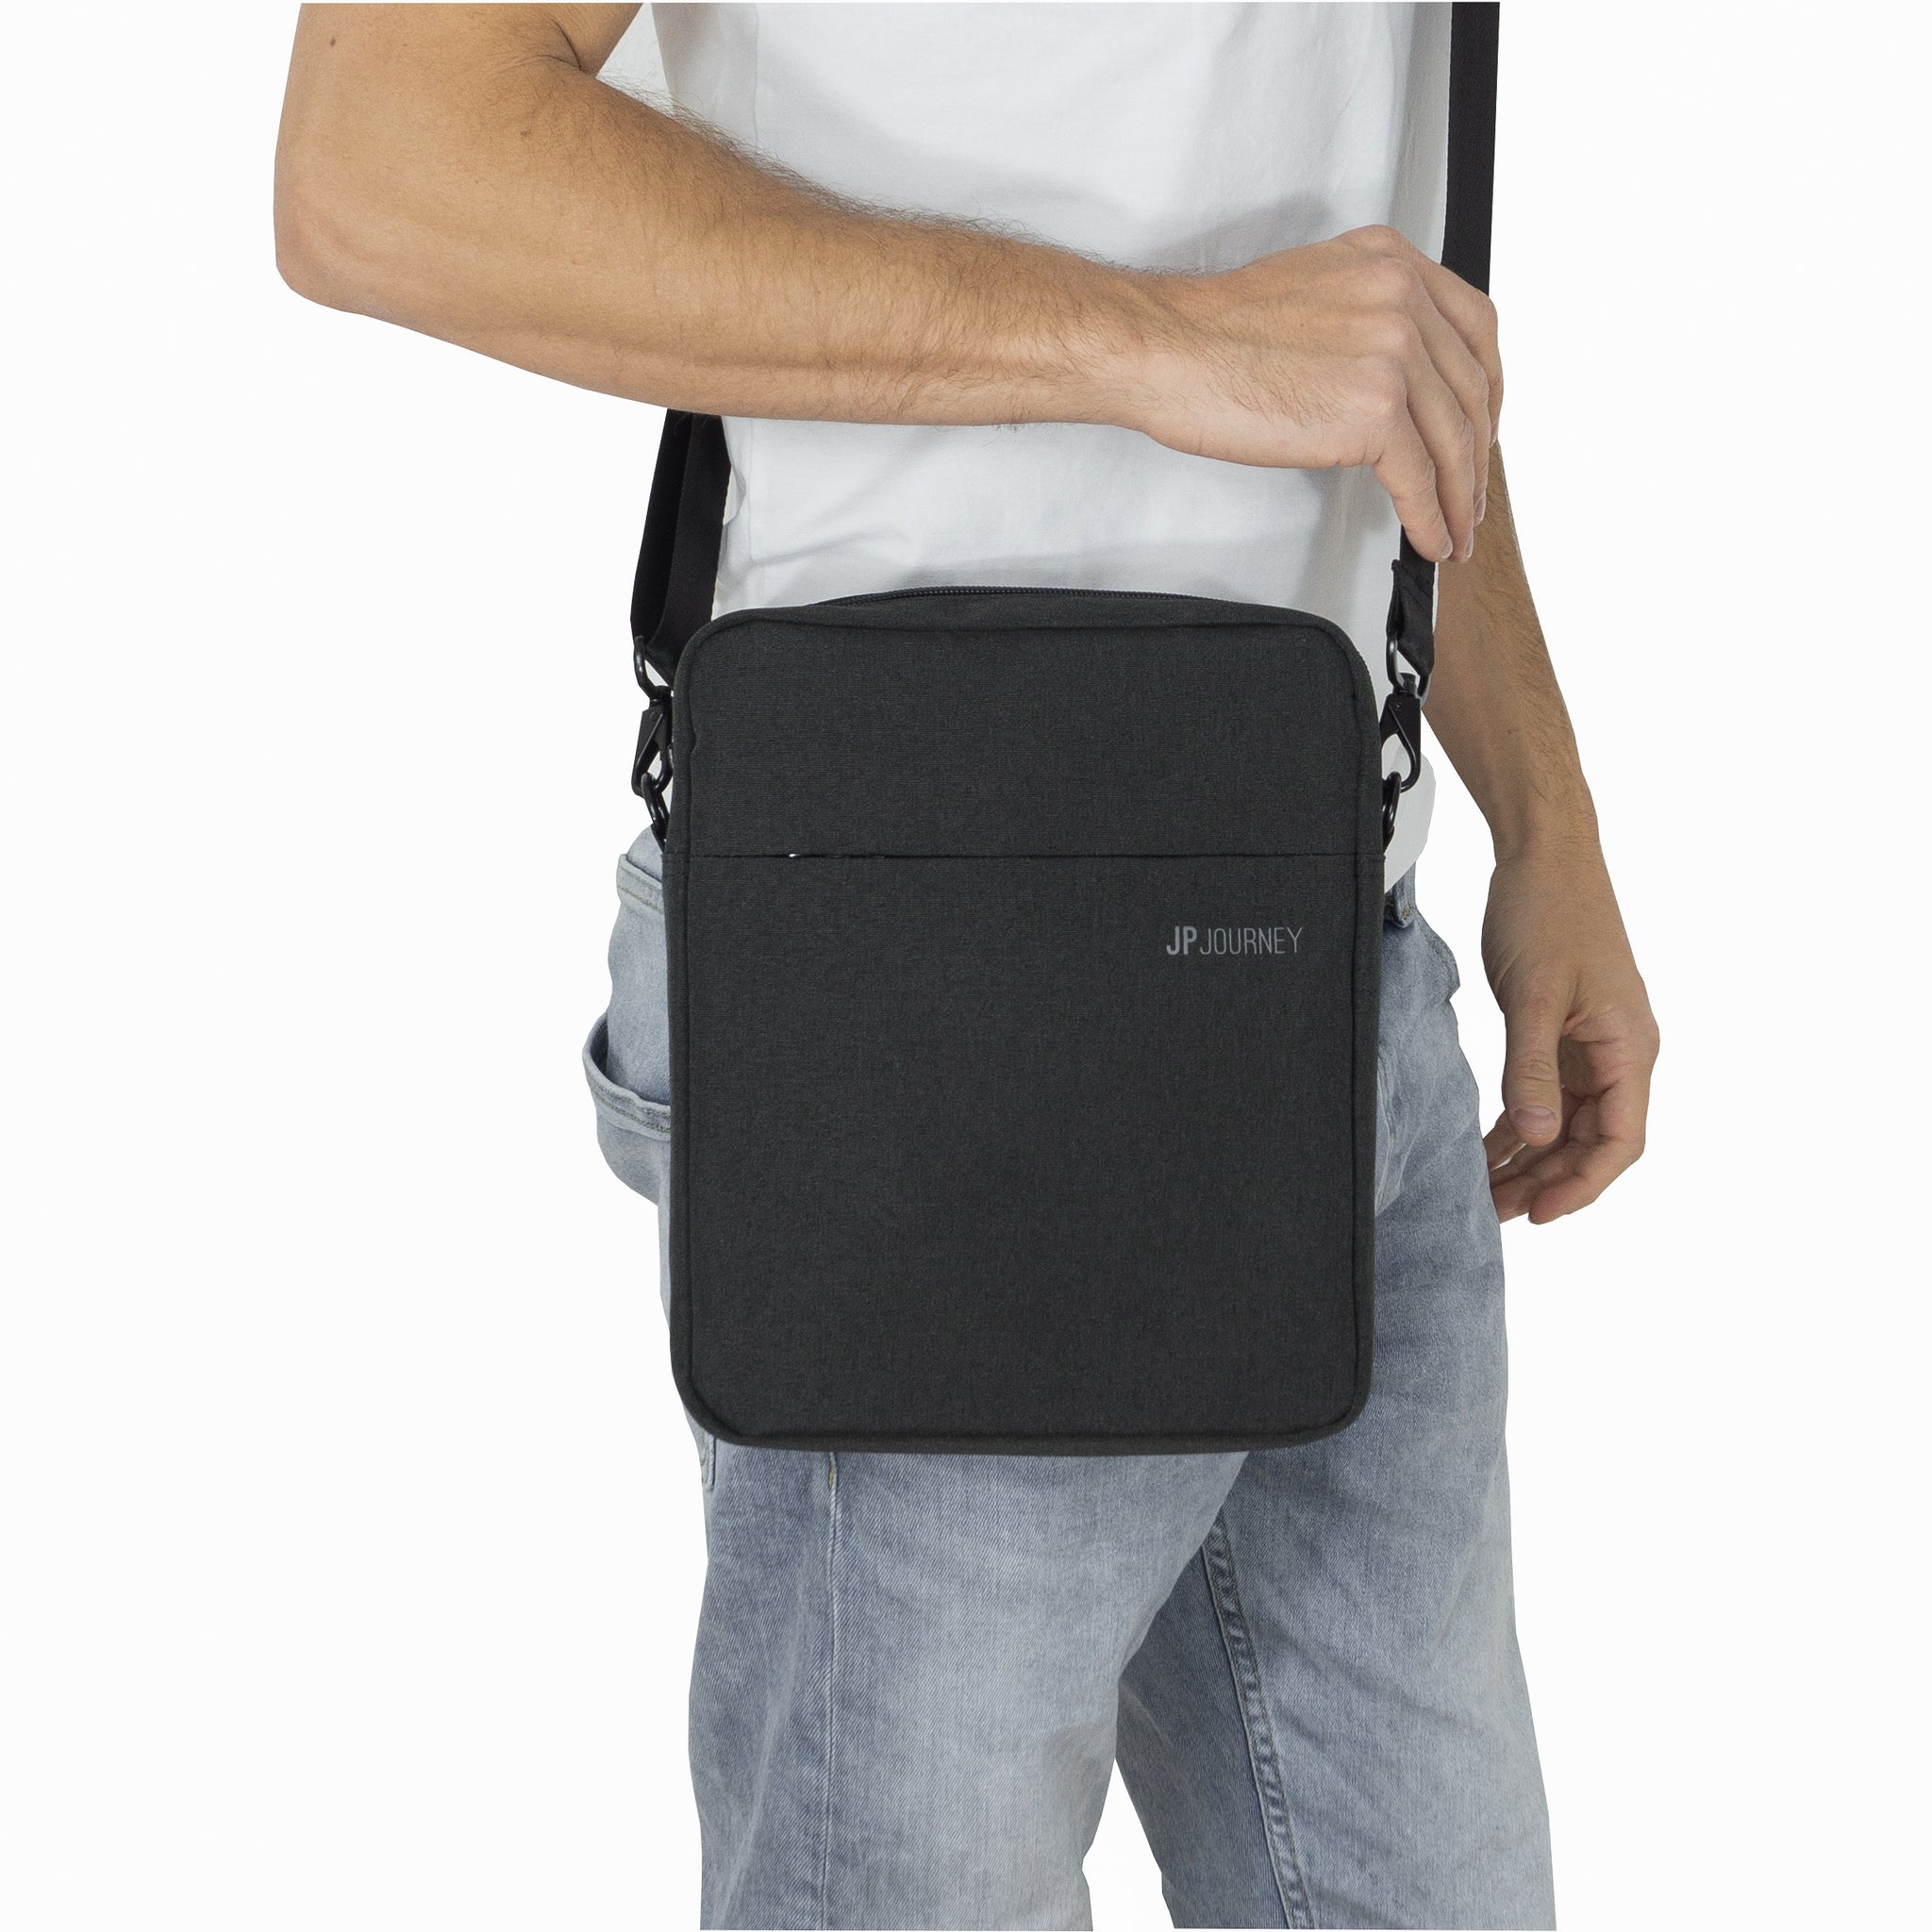 Logicmart Travel Backpack For School College and Office Laptop Backpack  travelling pocket Handbag Business Backpack day bag For Men & Women